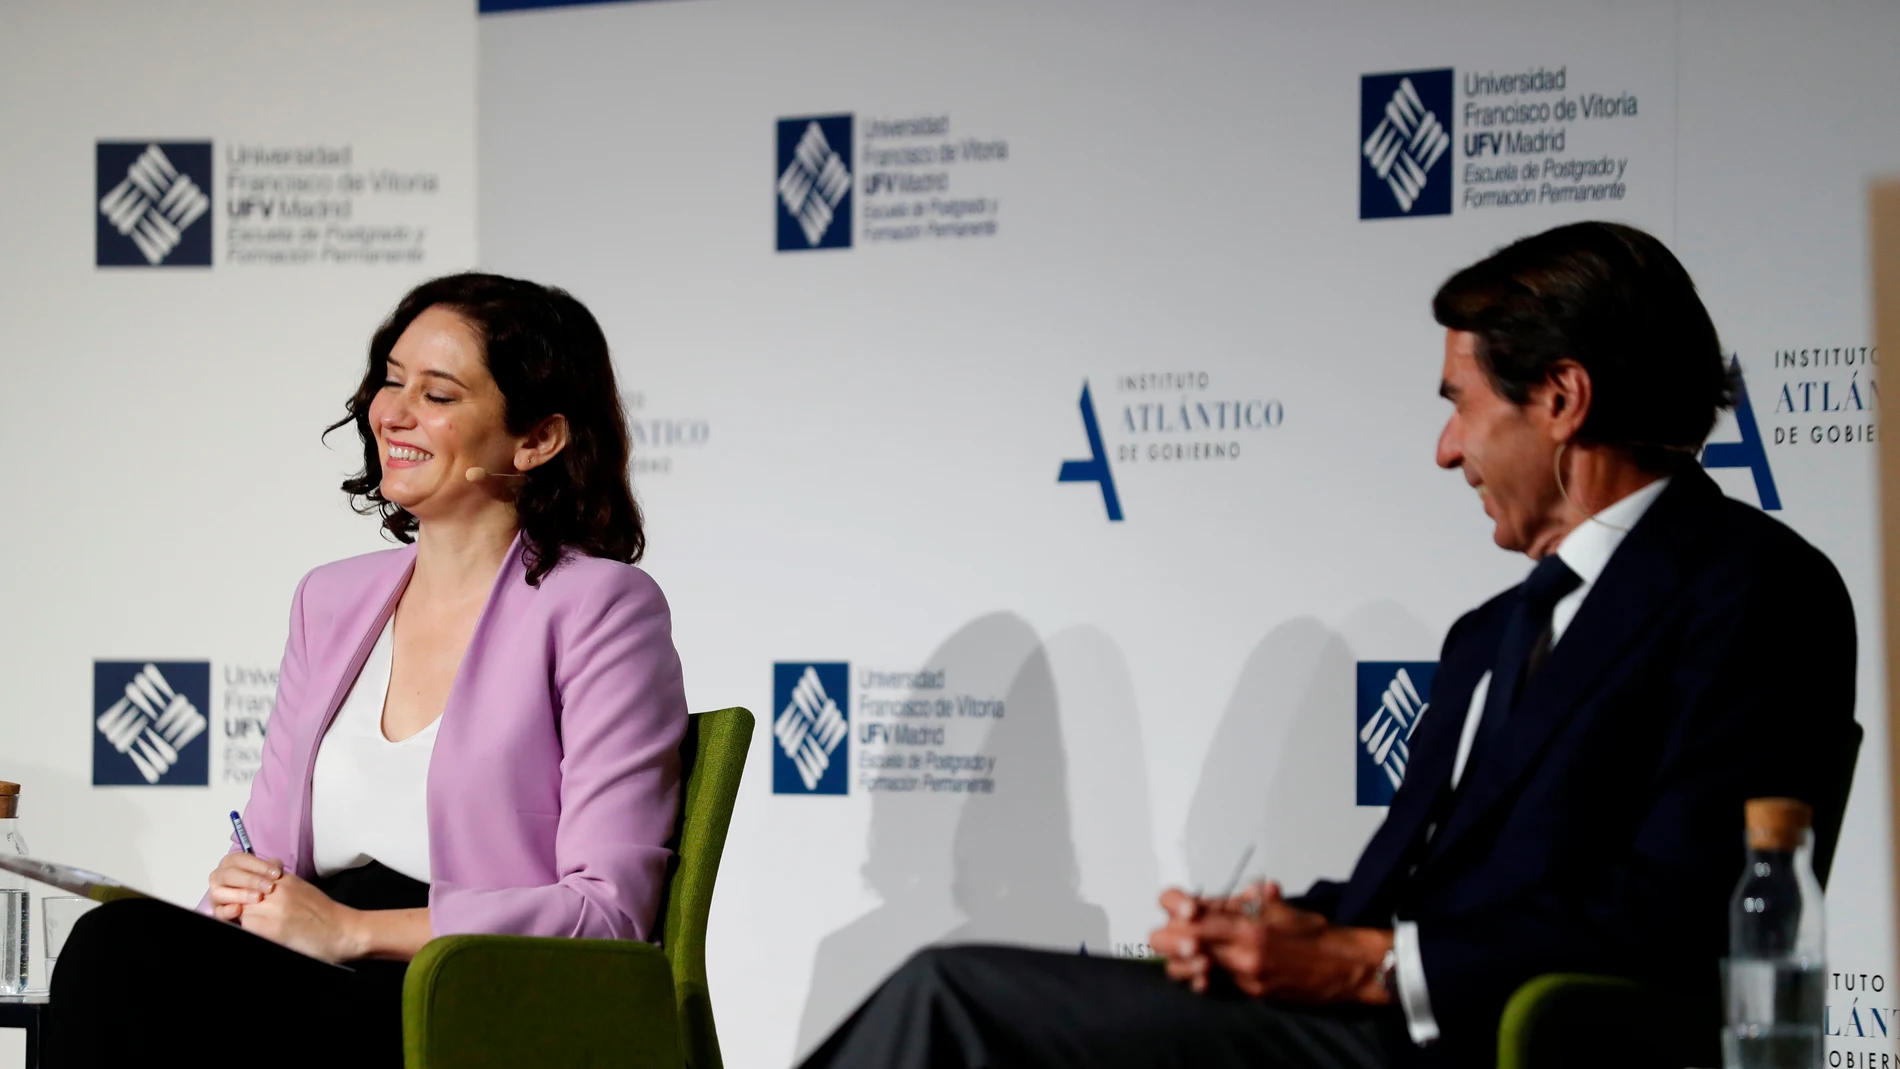 Isabel Díaz Ayuso y José María Aznar, sonrientes durante su encuentro